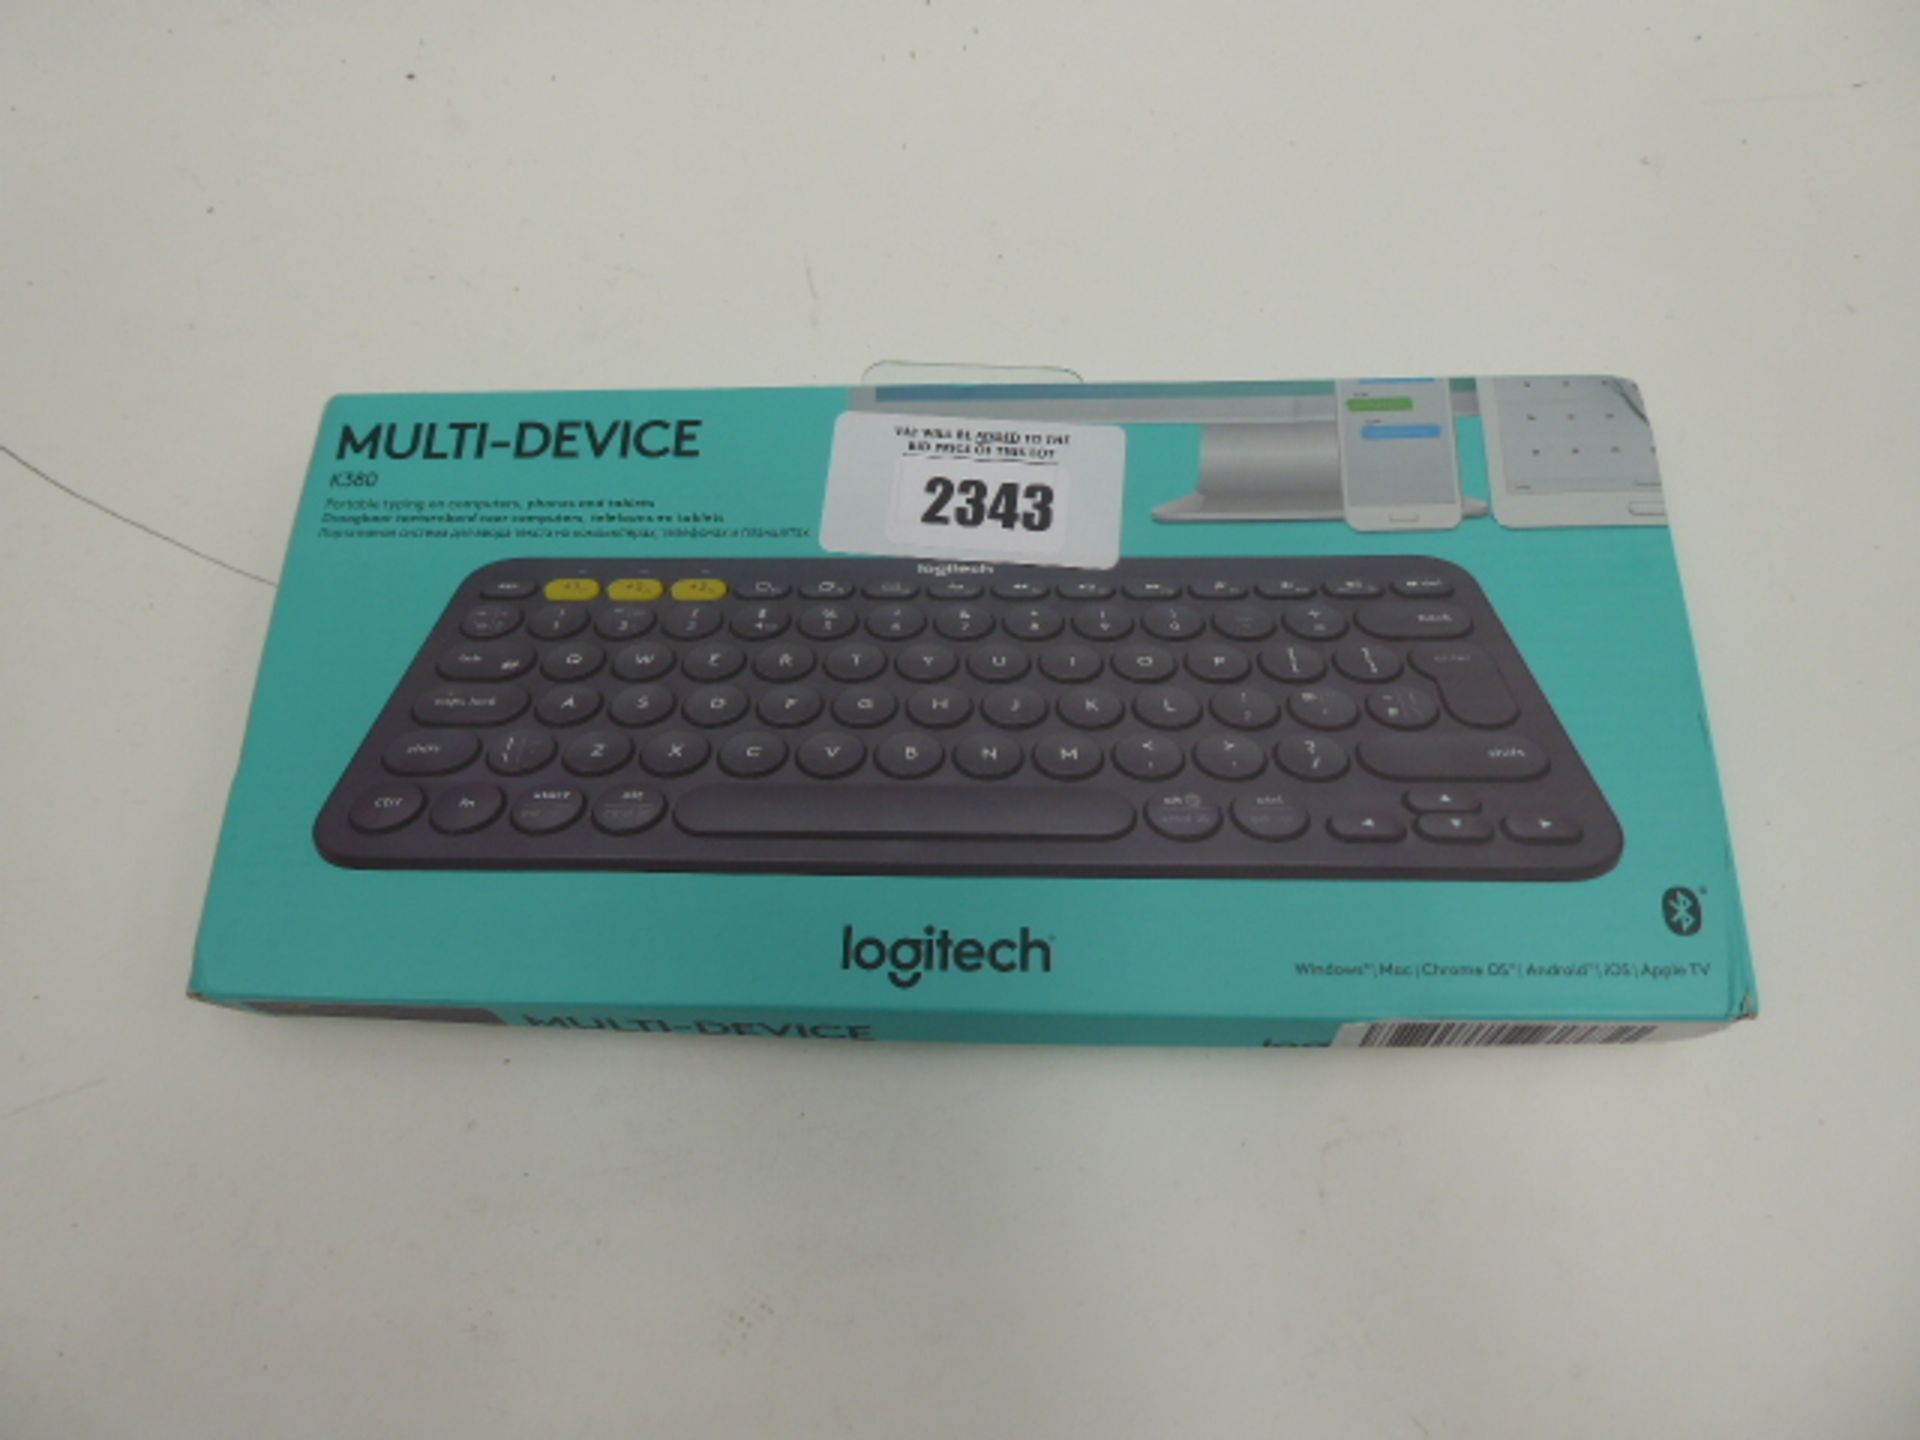 Multi-Device K380 wireless keyboard